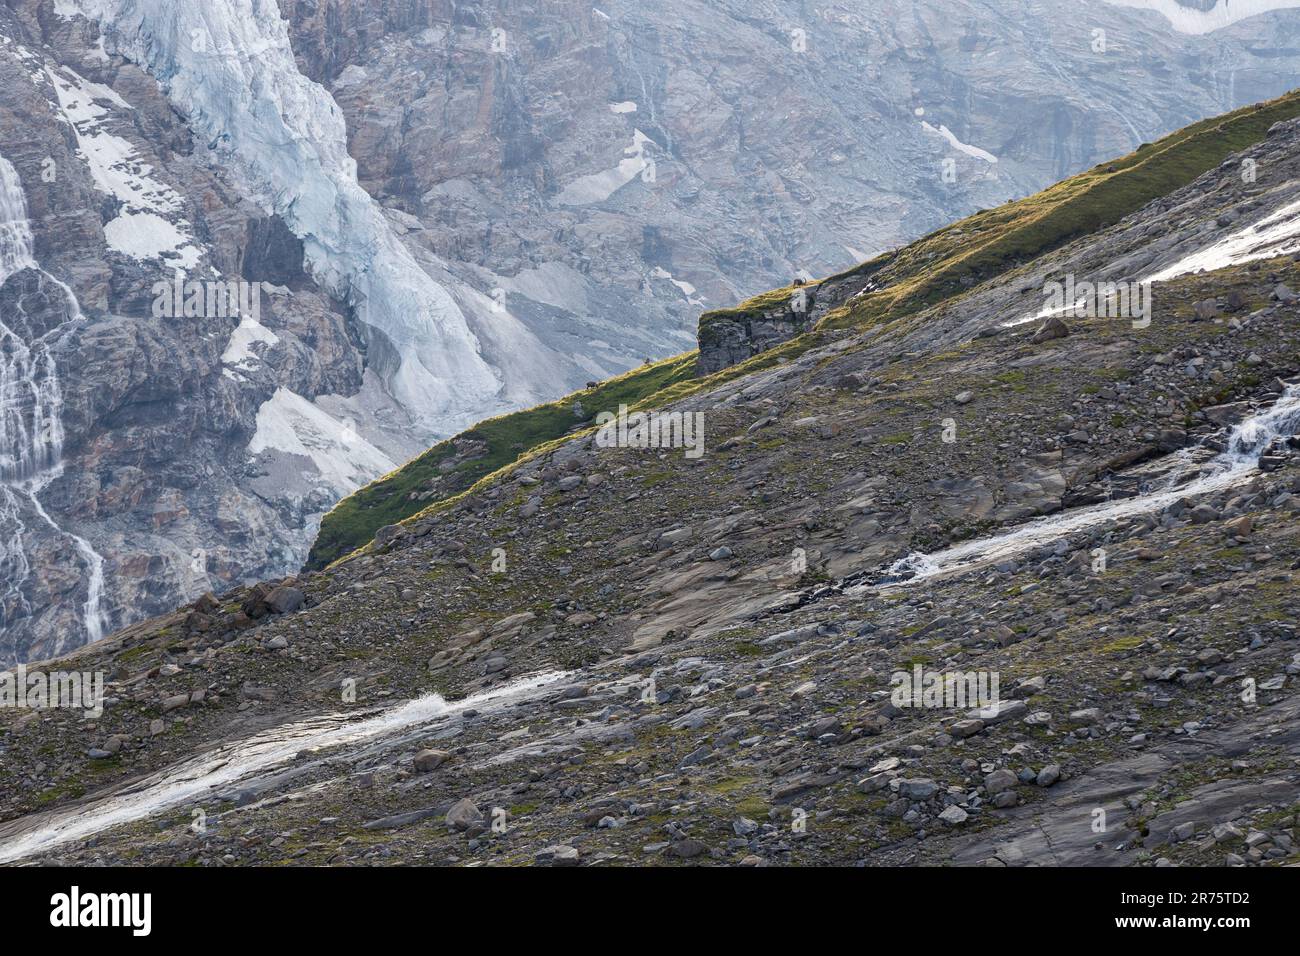 Wasserfallwinkel mit Ibexen grasen, Gletscher im Hintergrund Stockfoto